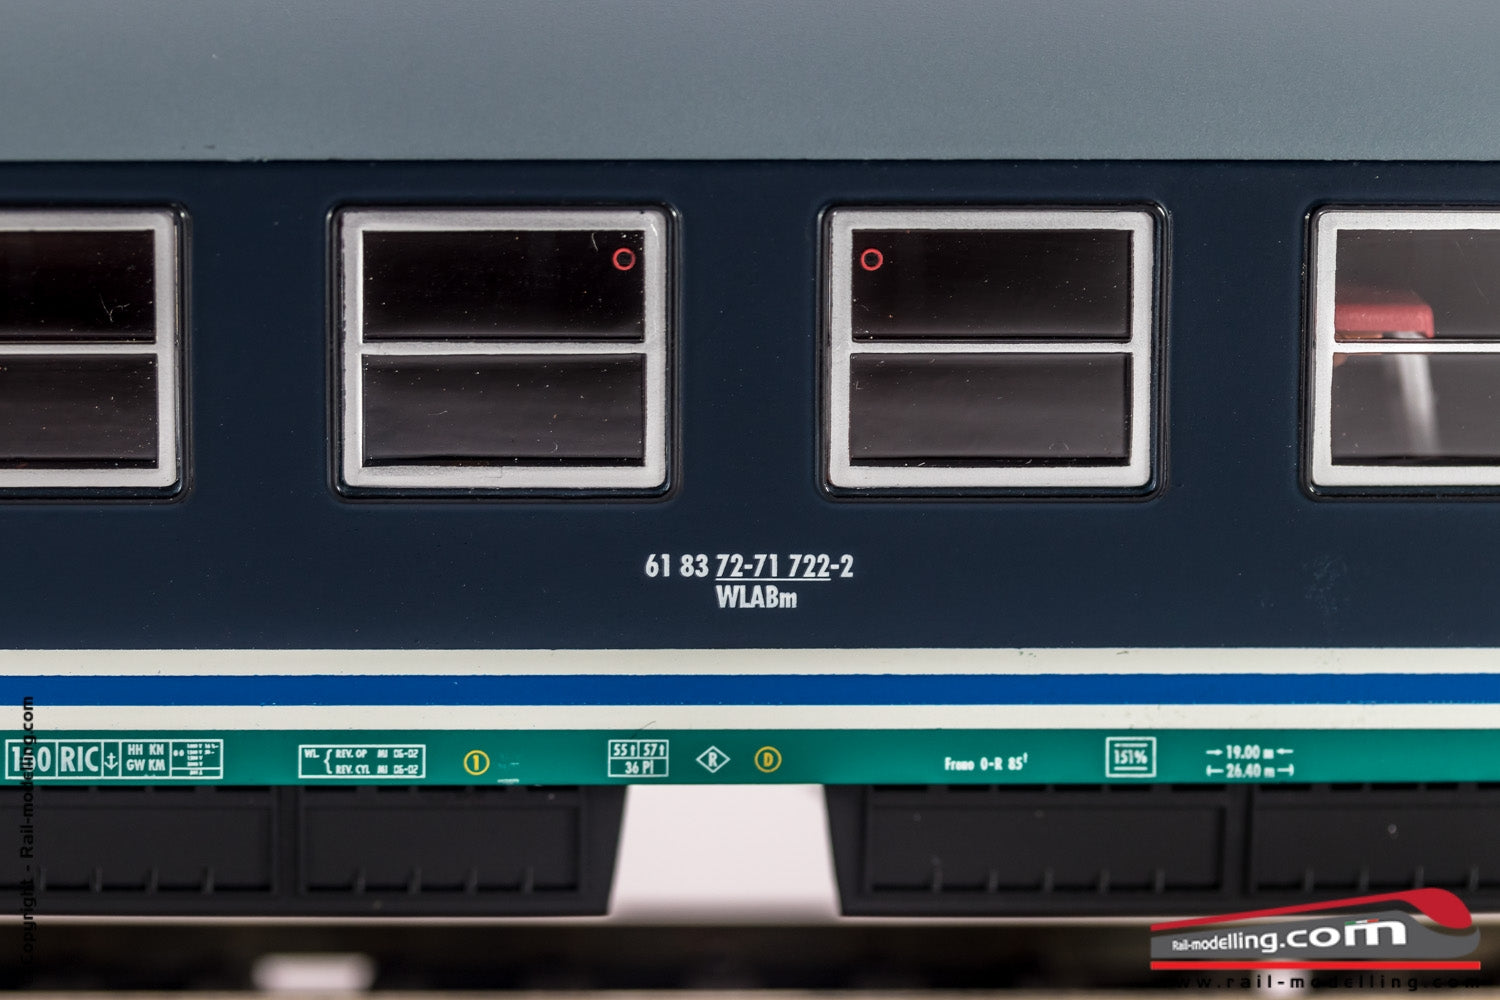 RIVAROSSI HR4242 - H0 1:87 - Carrozza vagone letto FS modelloMU 1973 class Treno Notte livrea XMPR ep.Vb